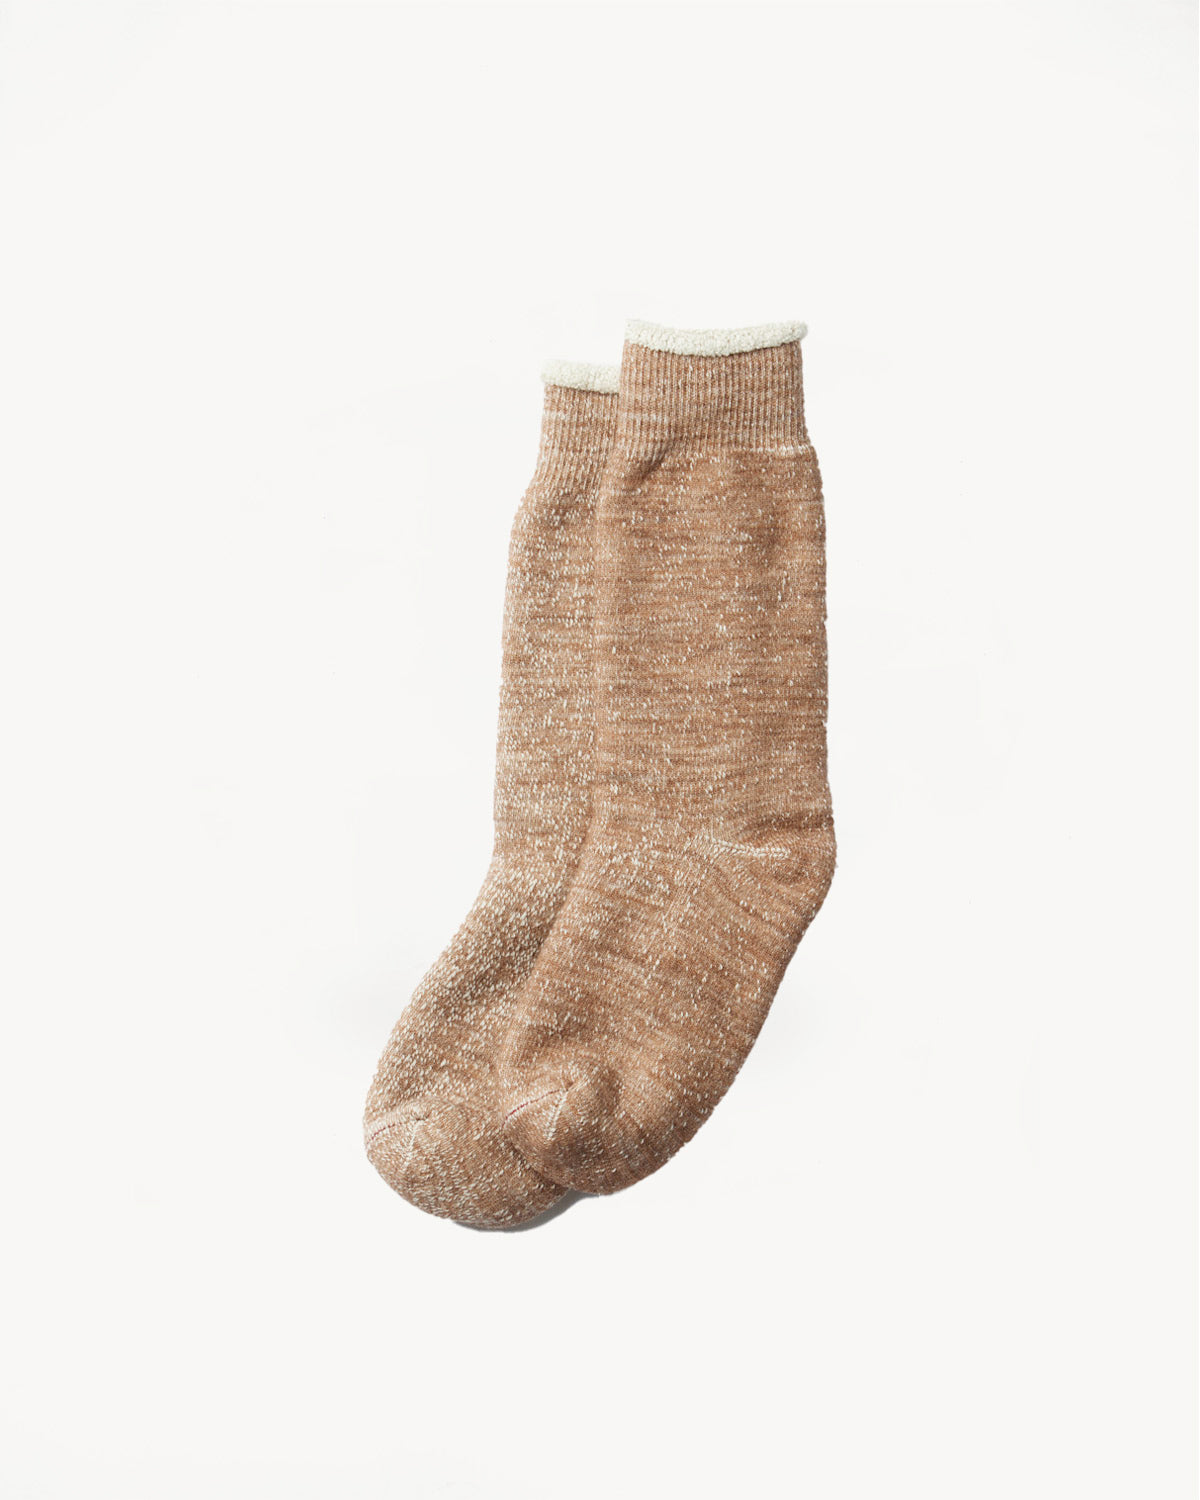 R1001 - Double Face Crew Socks Merino Wool OG - Camel